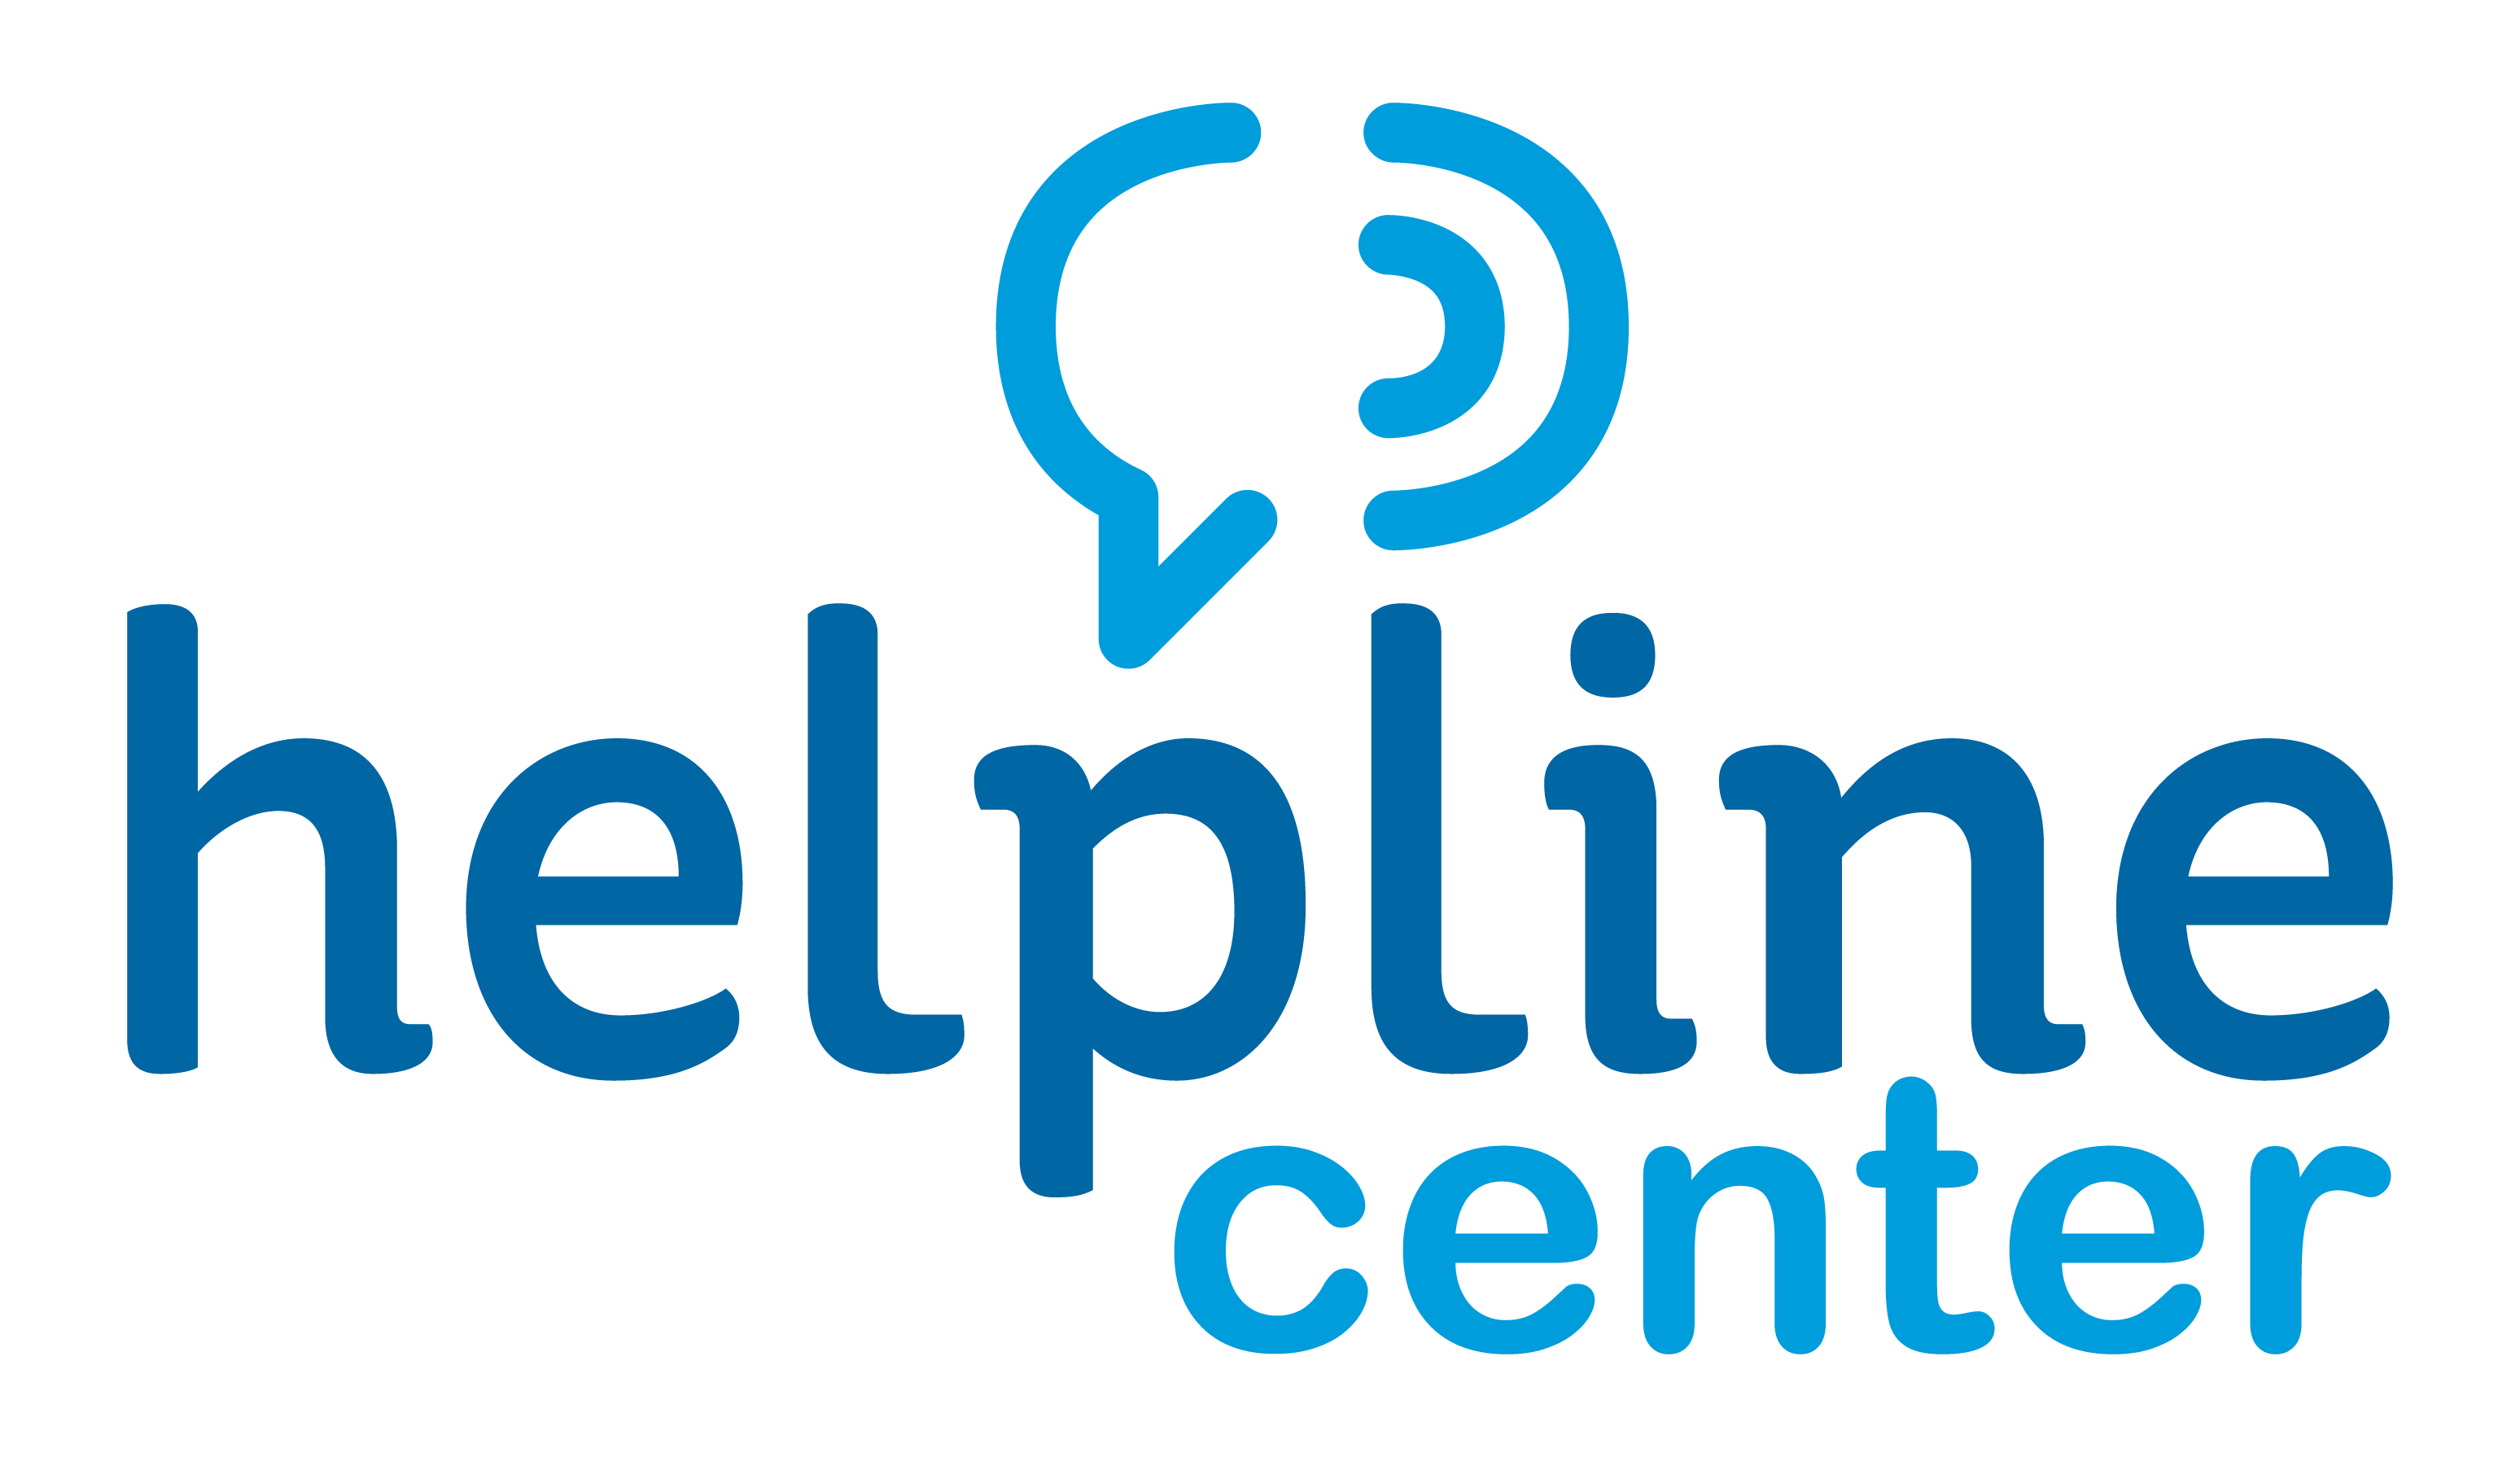 Helpline Center Standard